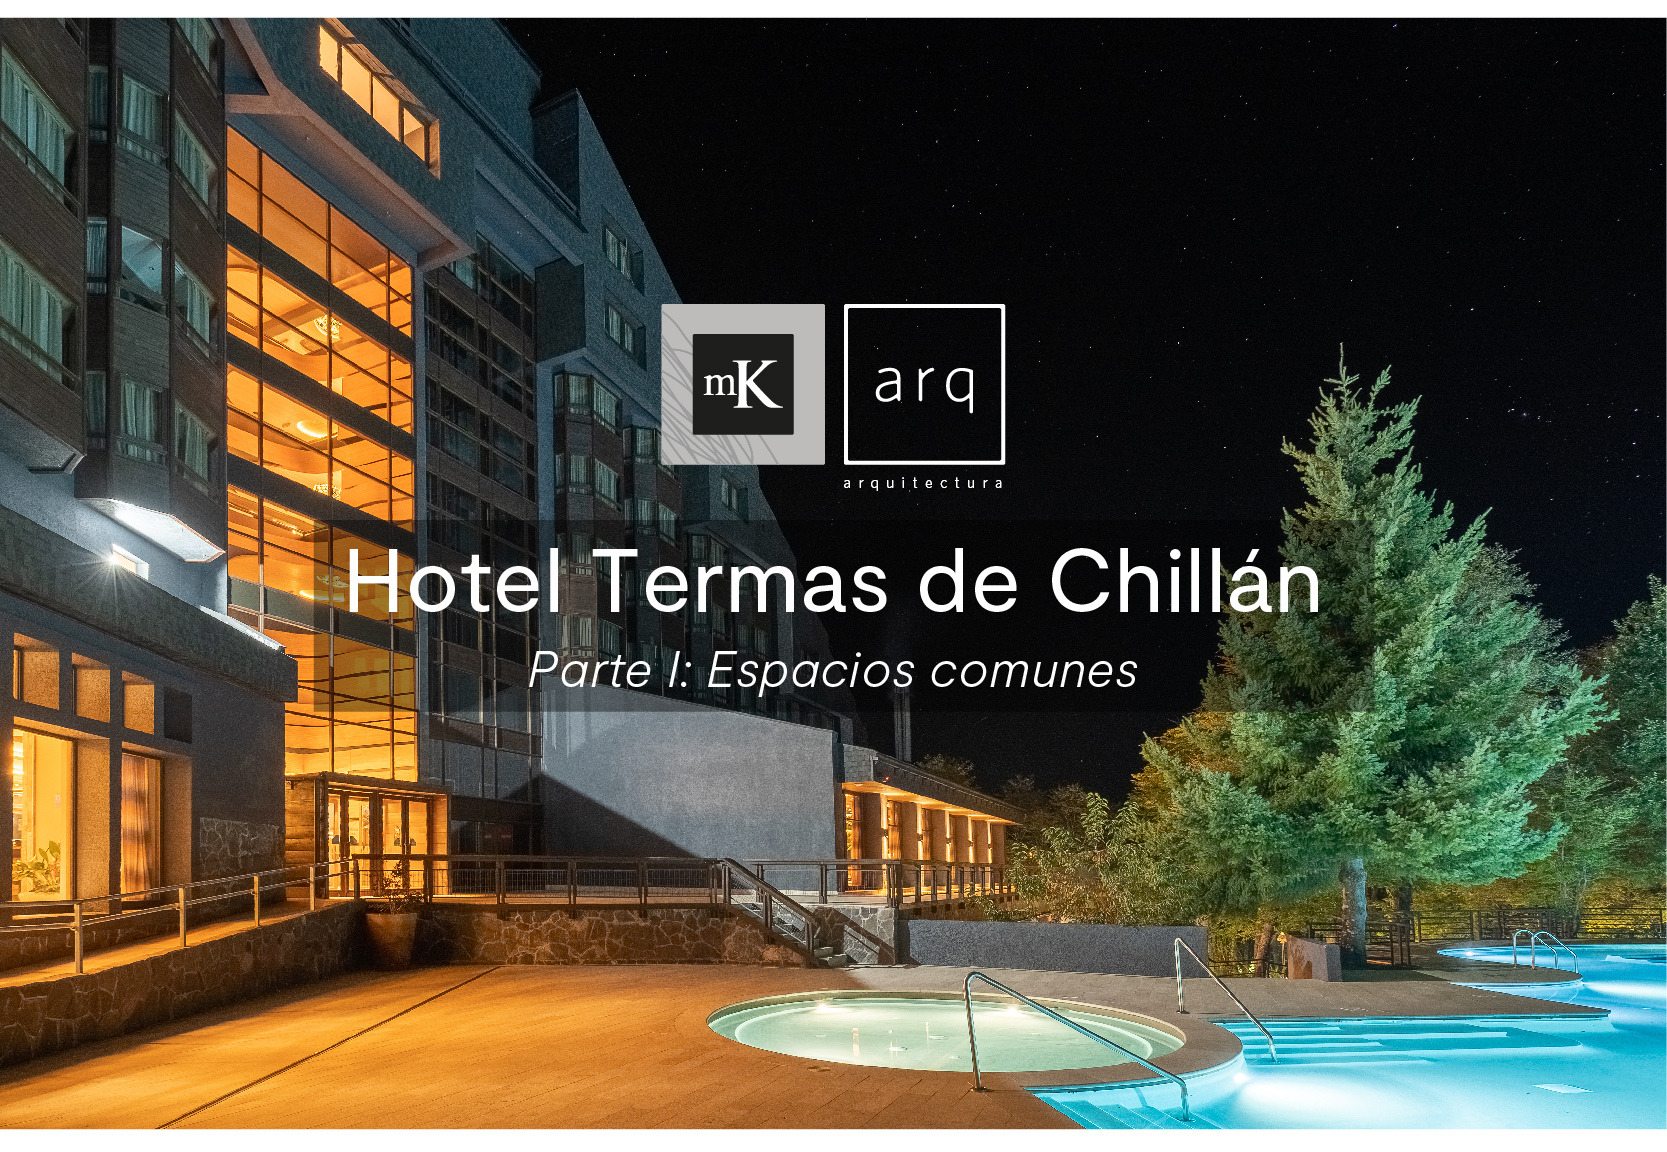 hotel termas de chillan, proyecto de hotel, mk arq, arquitectura, interiorismo, renovacion, tendencias, porcelanatos, ceramicas